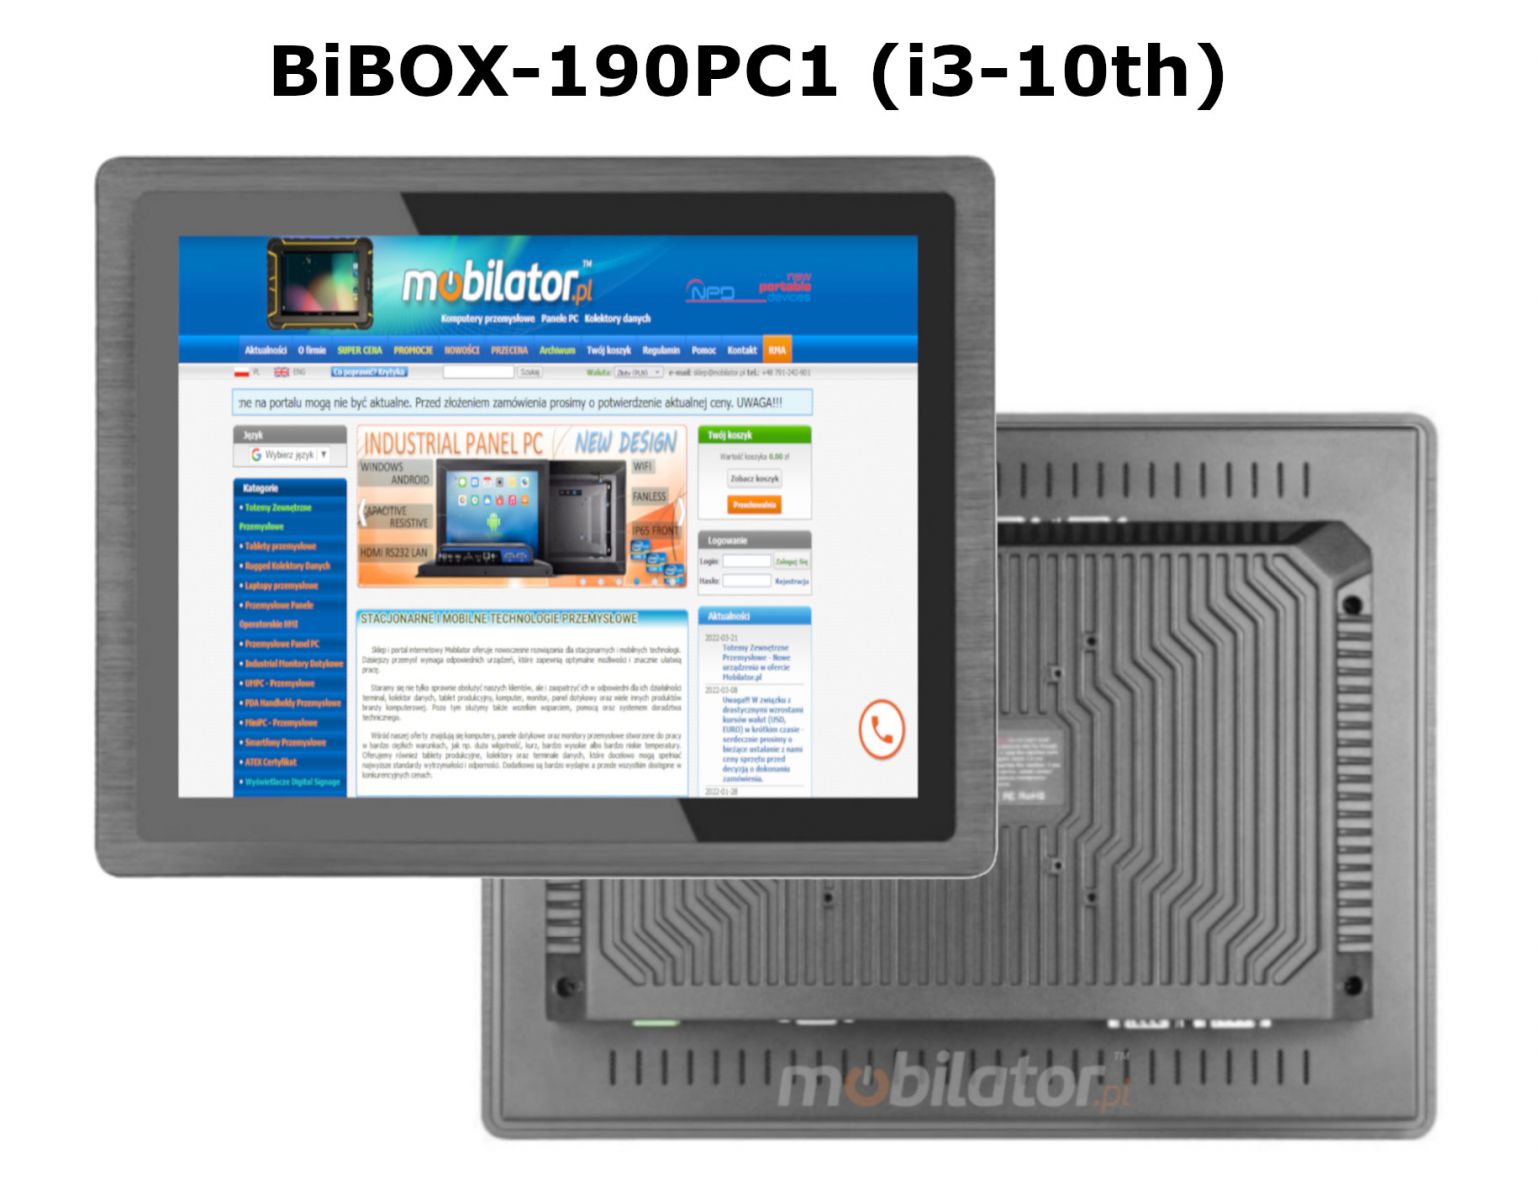 BIBOX-190PC1 odporny dobry wydajny komputer panelowy